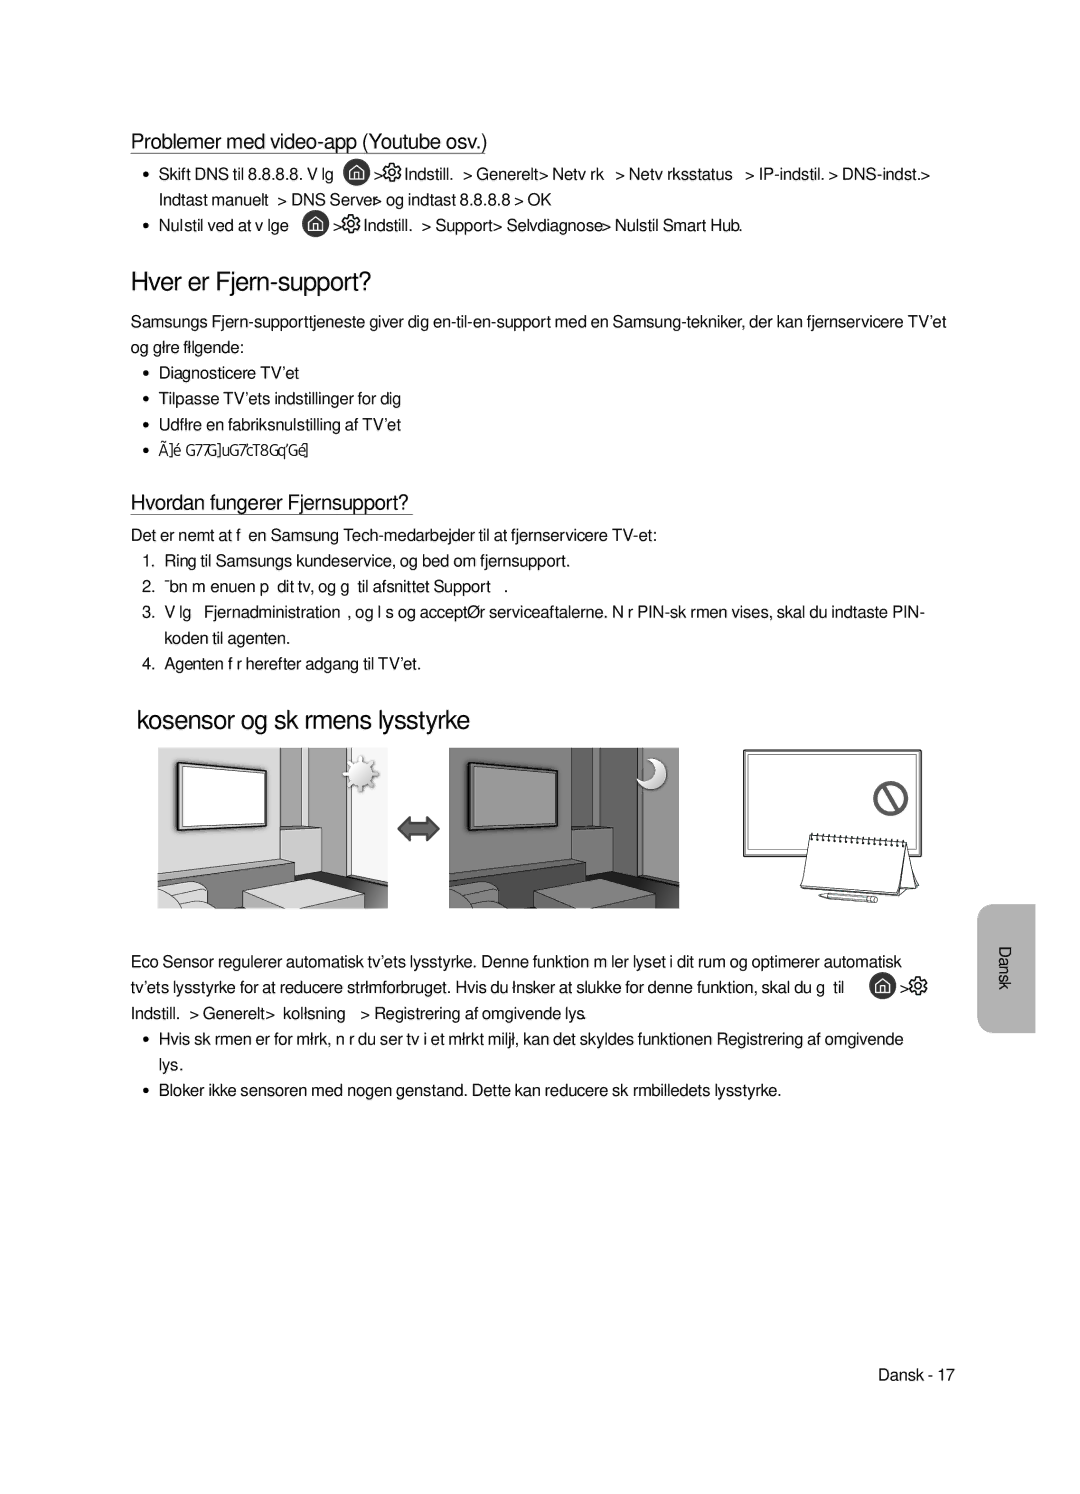 Samsung UE55MU8005TXXC manual Hver er Fjern-support?, Økosensor og skærmens lysstyrke, Problemer med video-app Youtube osv 